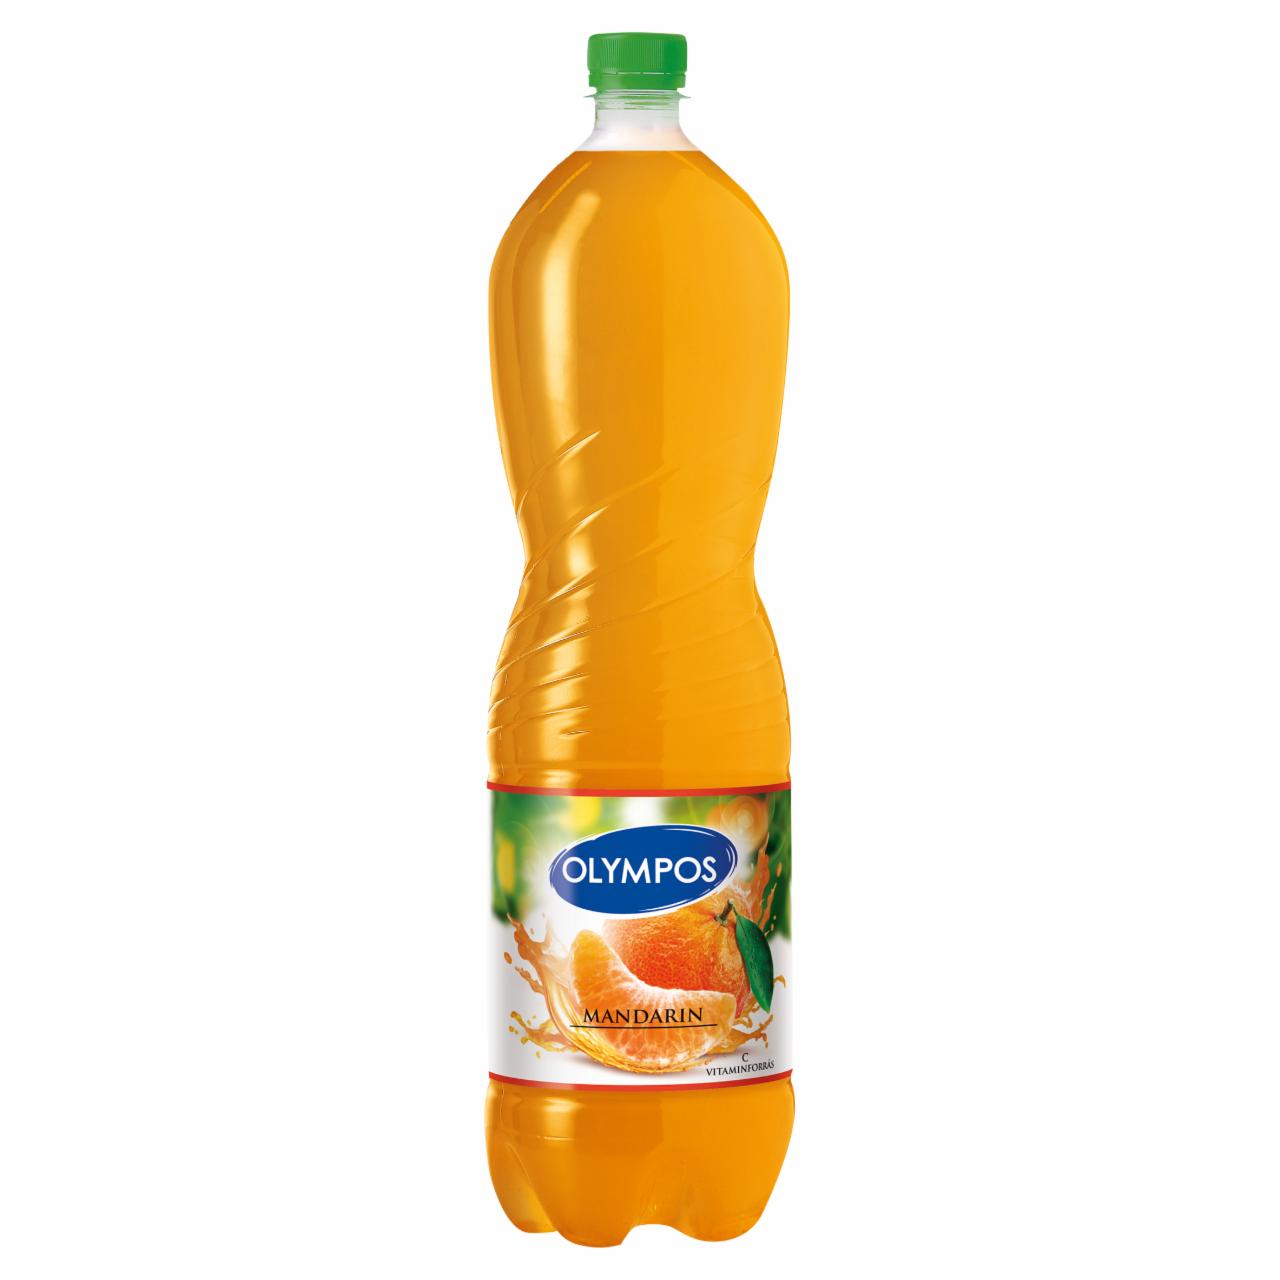 Képek - Olympos rostos mandarin üdítőital 1,5 l